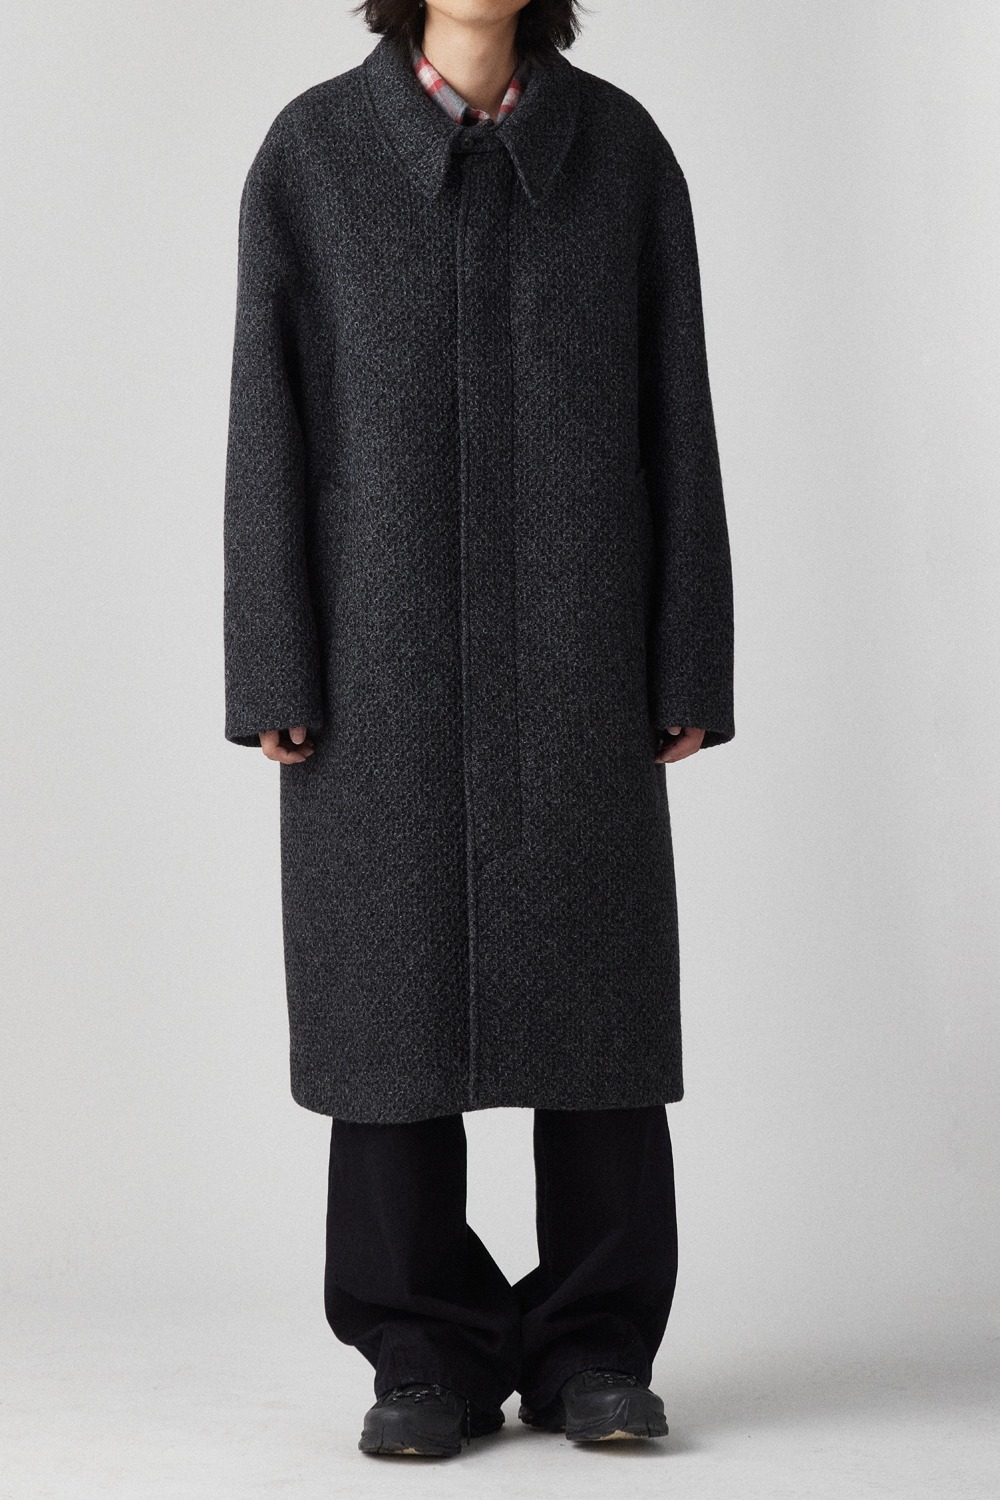 [Obscura Exclusive] Balmacaan Coat V2 Tweed Charcoal